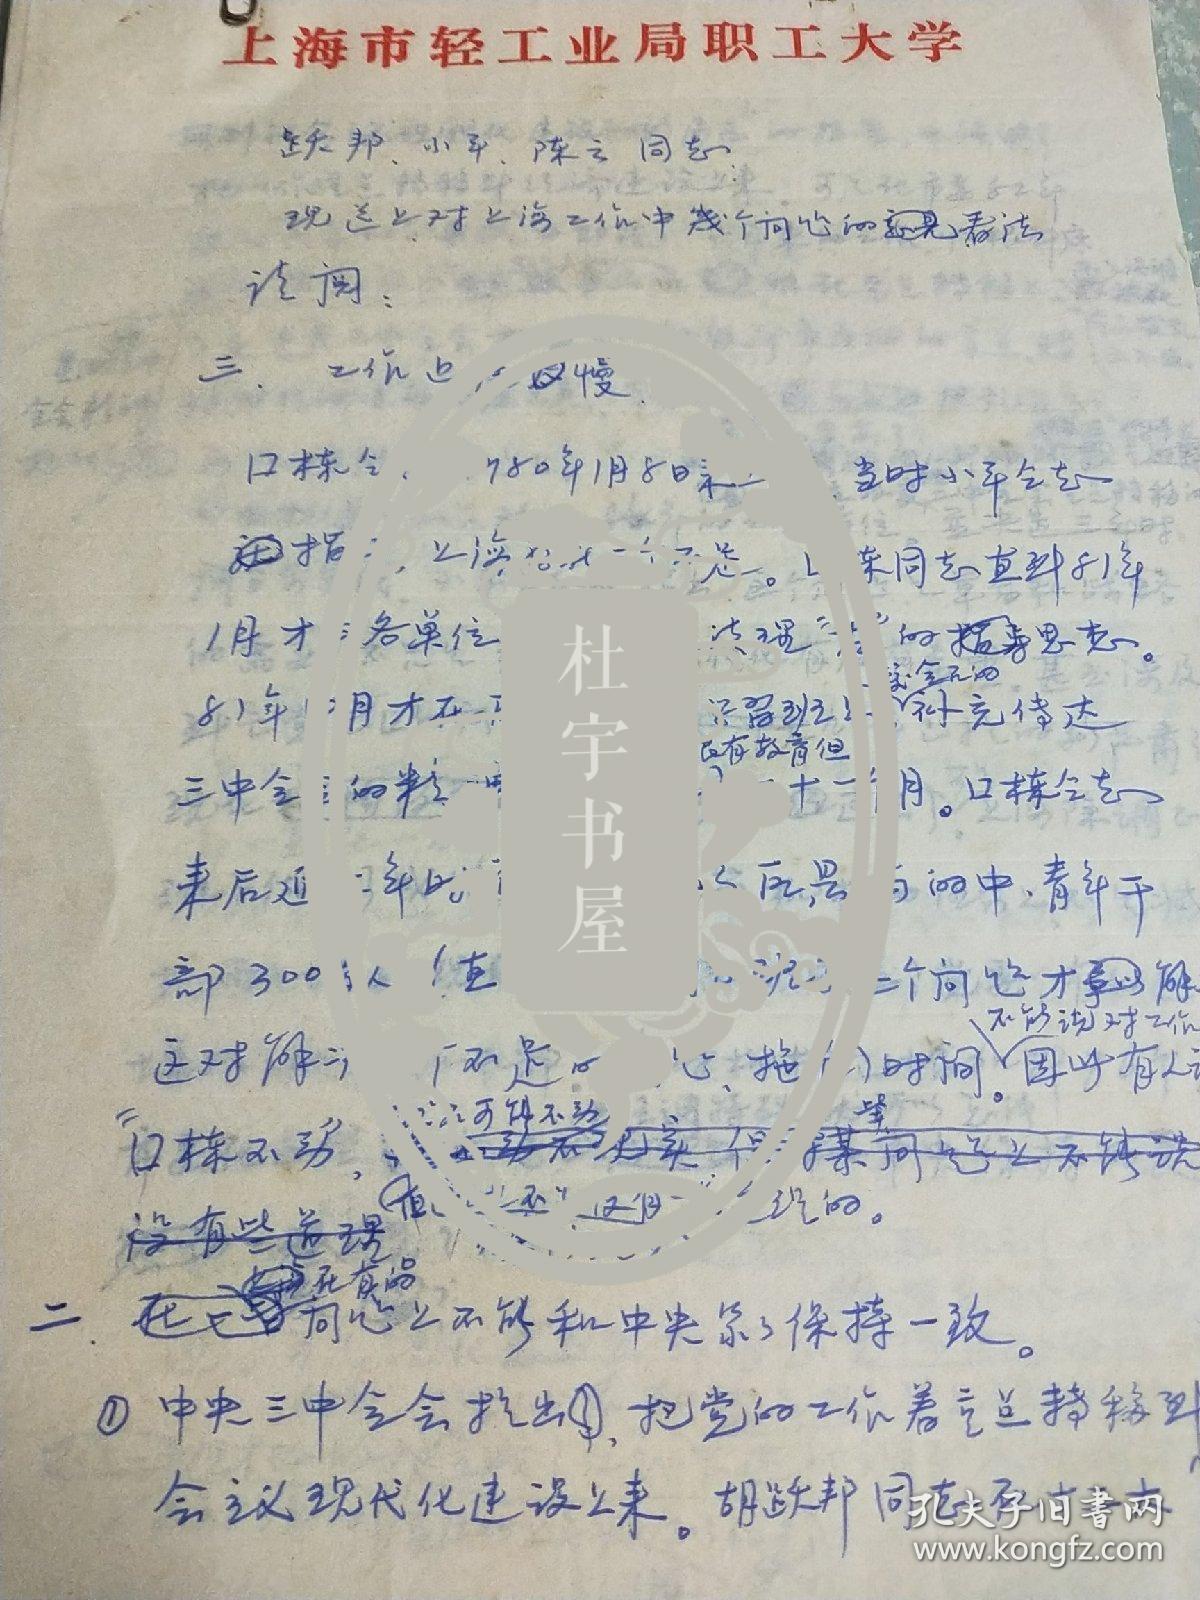 原上海人事局局長安善平信札十三頁